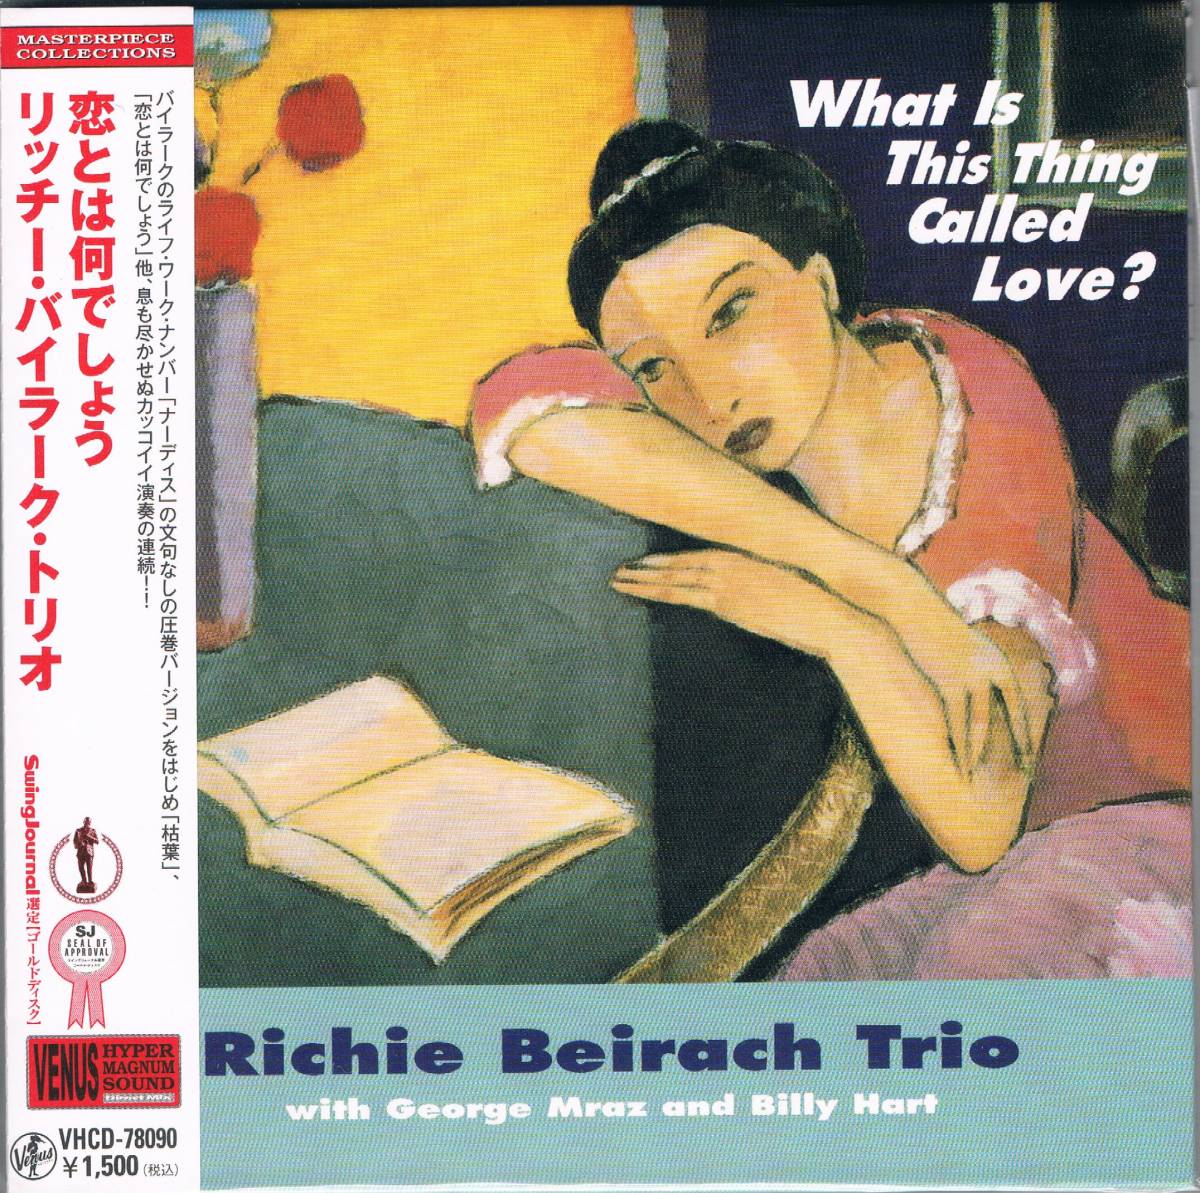 紙ジャケ★リッチー・バイラーク・トリオRichie Beirach Trio/恋とは何でしょうWhat Is This Thing Called Love ?_画像1